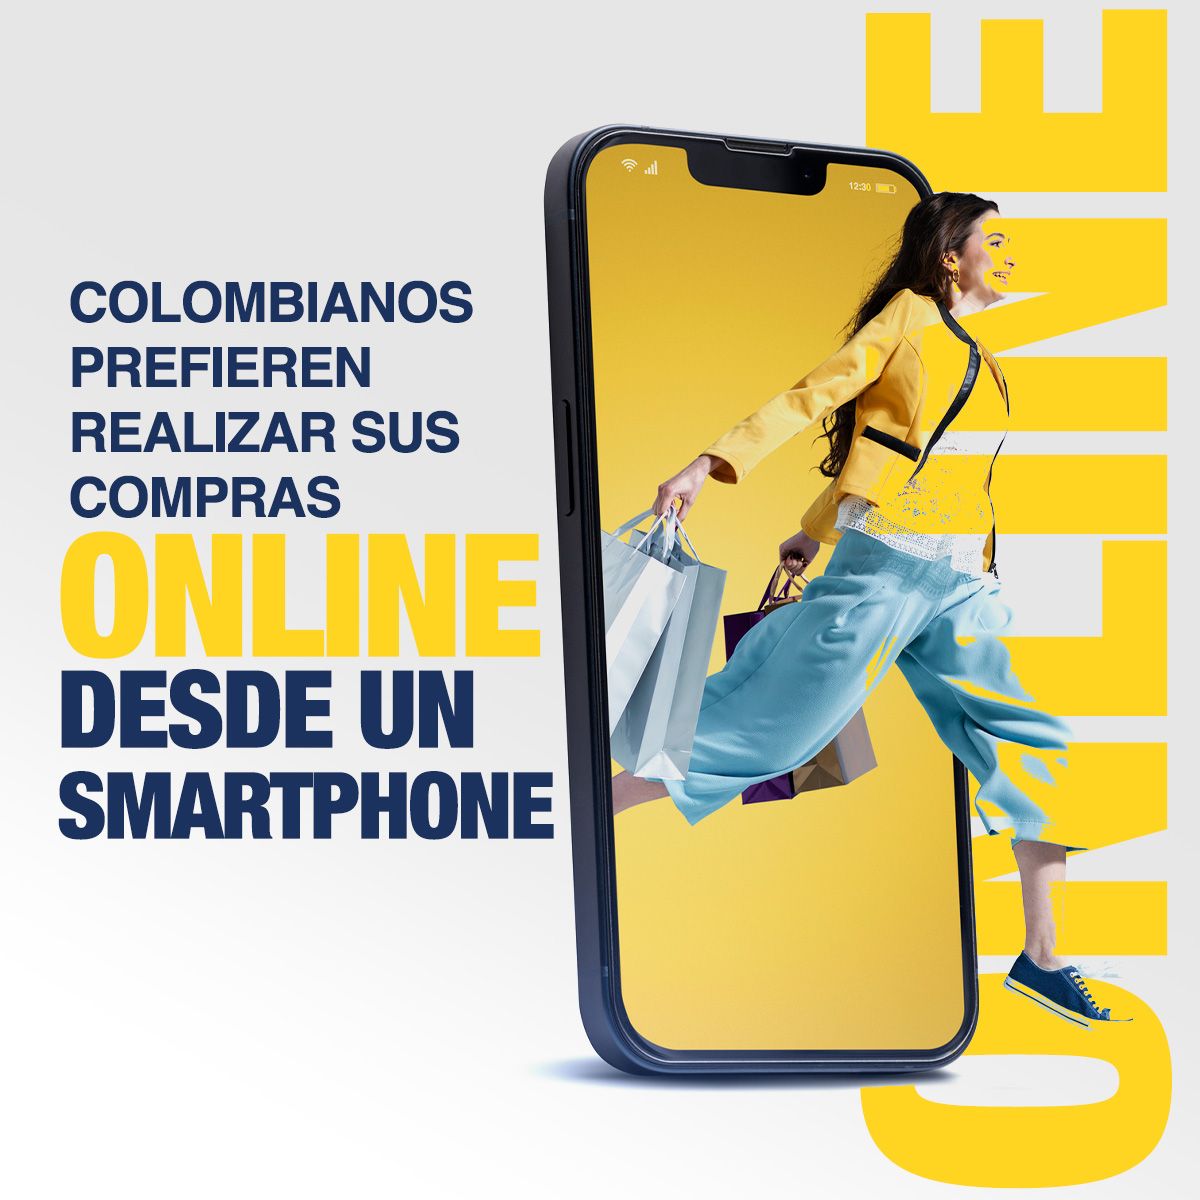 Colombianos Prefieren Realizar sus Compras Online Desde un Smartphone